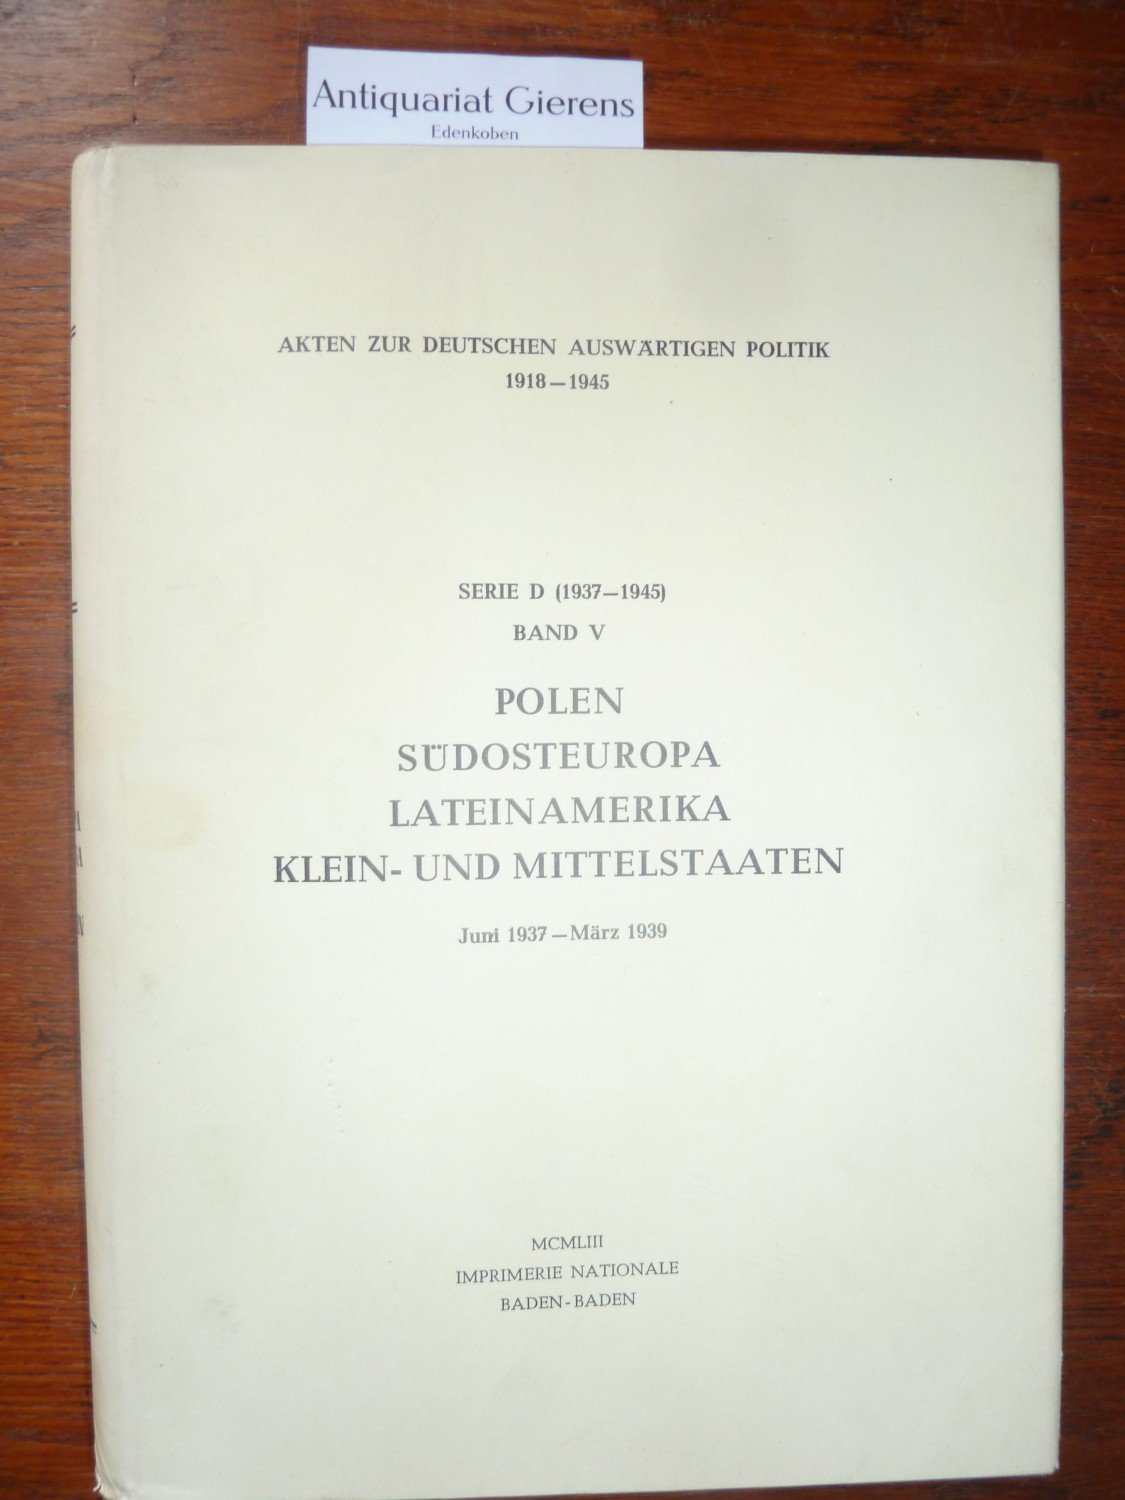 Akten zur deutschen Auswärtigen Politik 1918-1945.“ (Imprimerie 